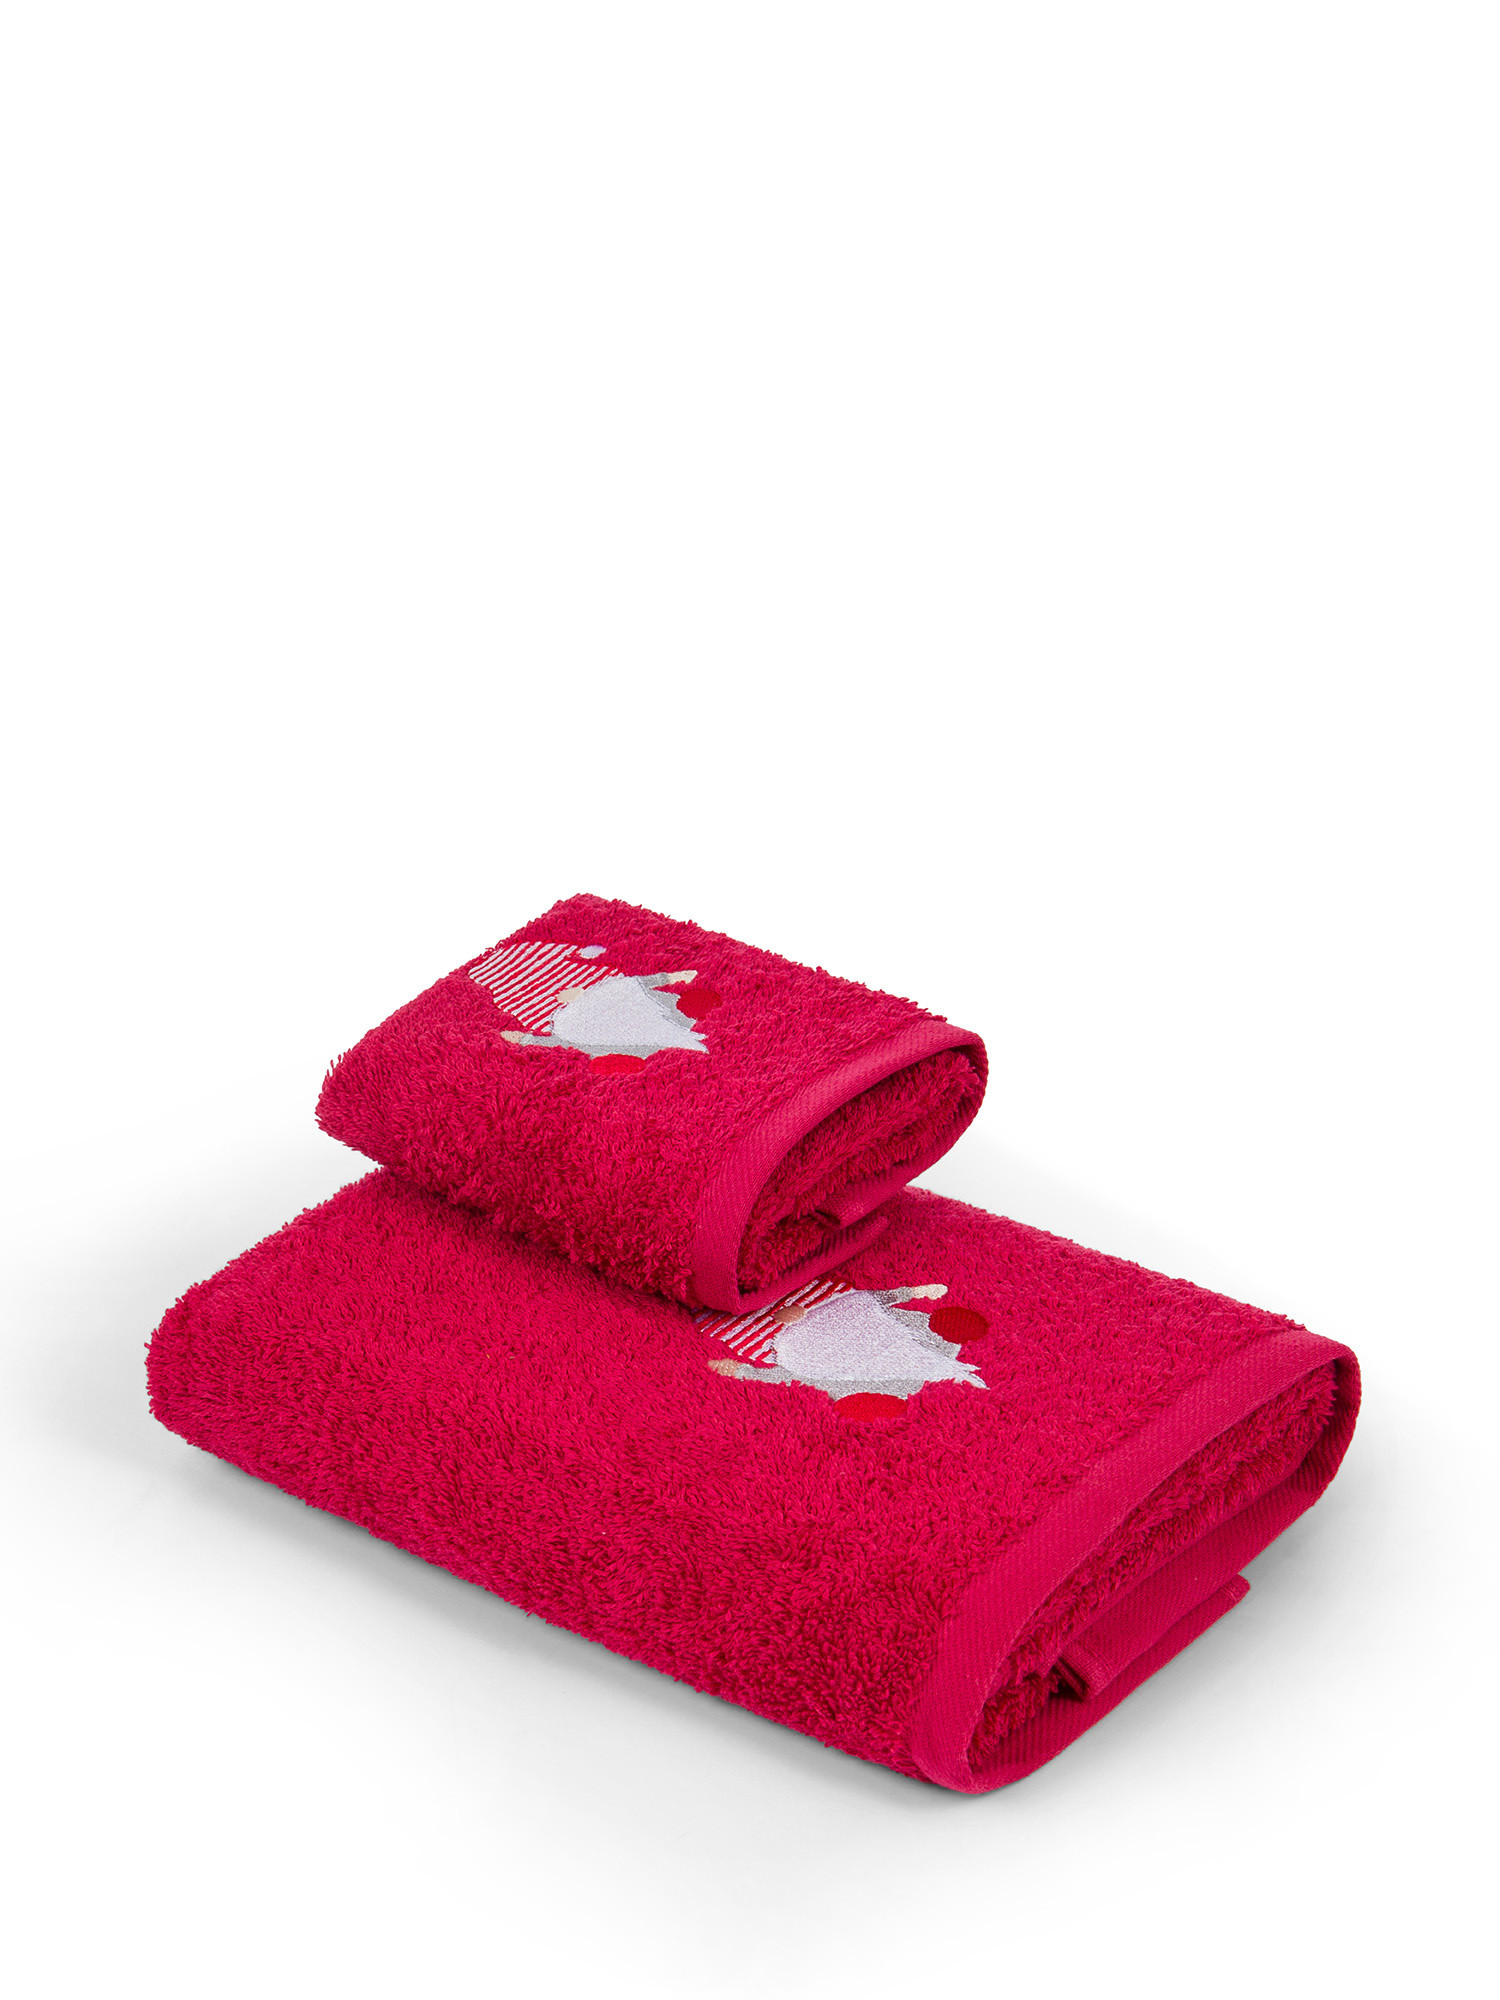 Комплект из 2-х хлопковых полотенец с вышивкой гномиков., красный